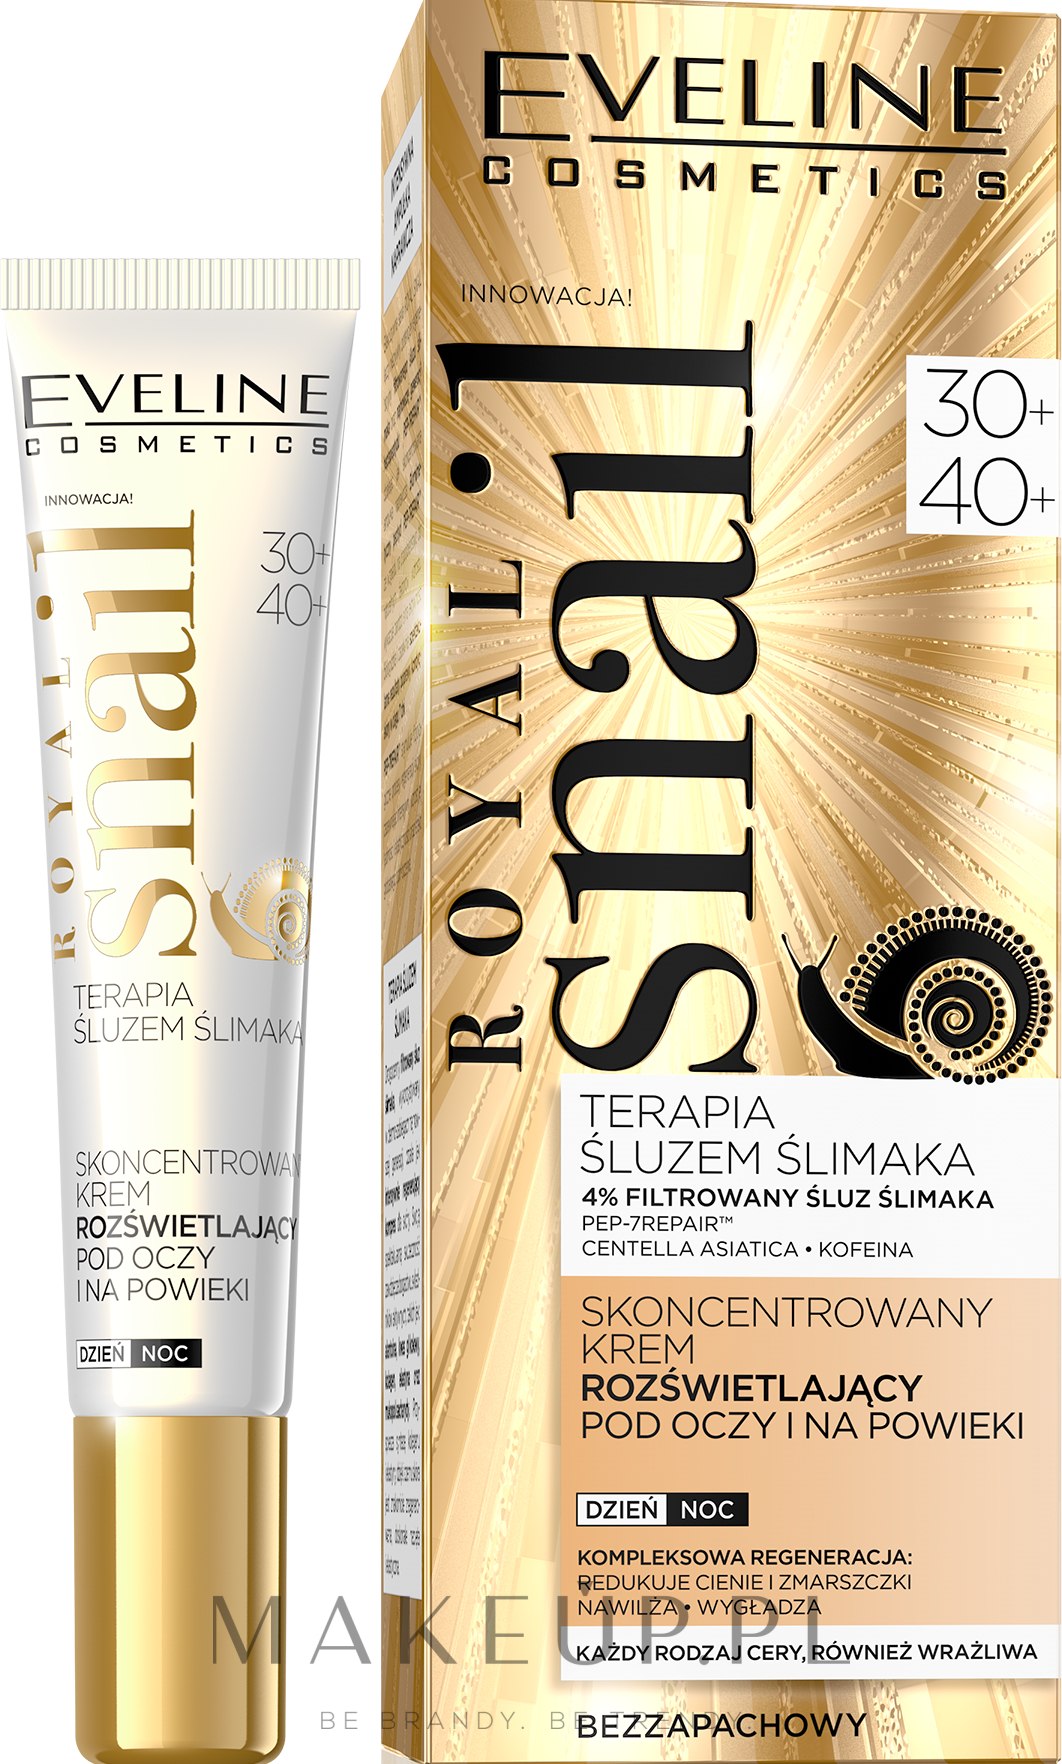 Skoncentrowany krem rozświetlający pod oczy na powieki 30+/40+ - Eveline Cosmetics Royal Snail — Zdjęcie 20 ml